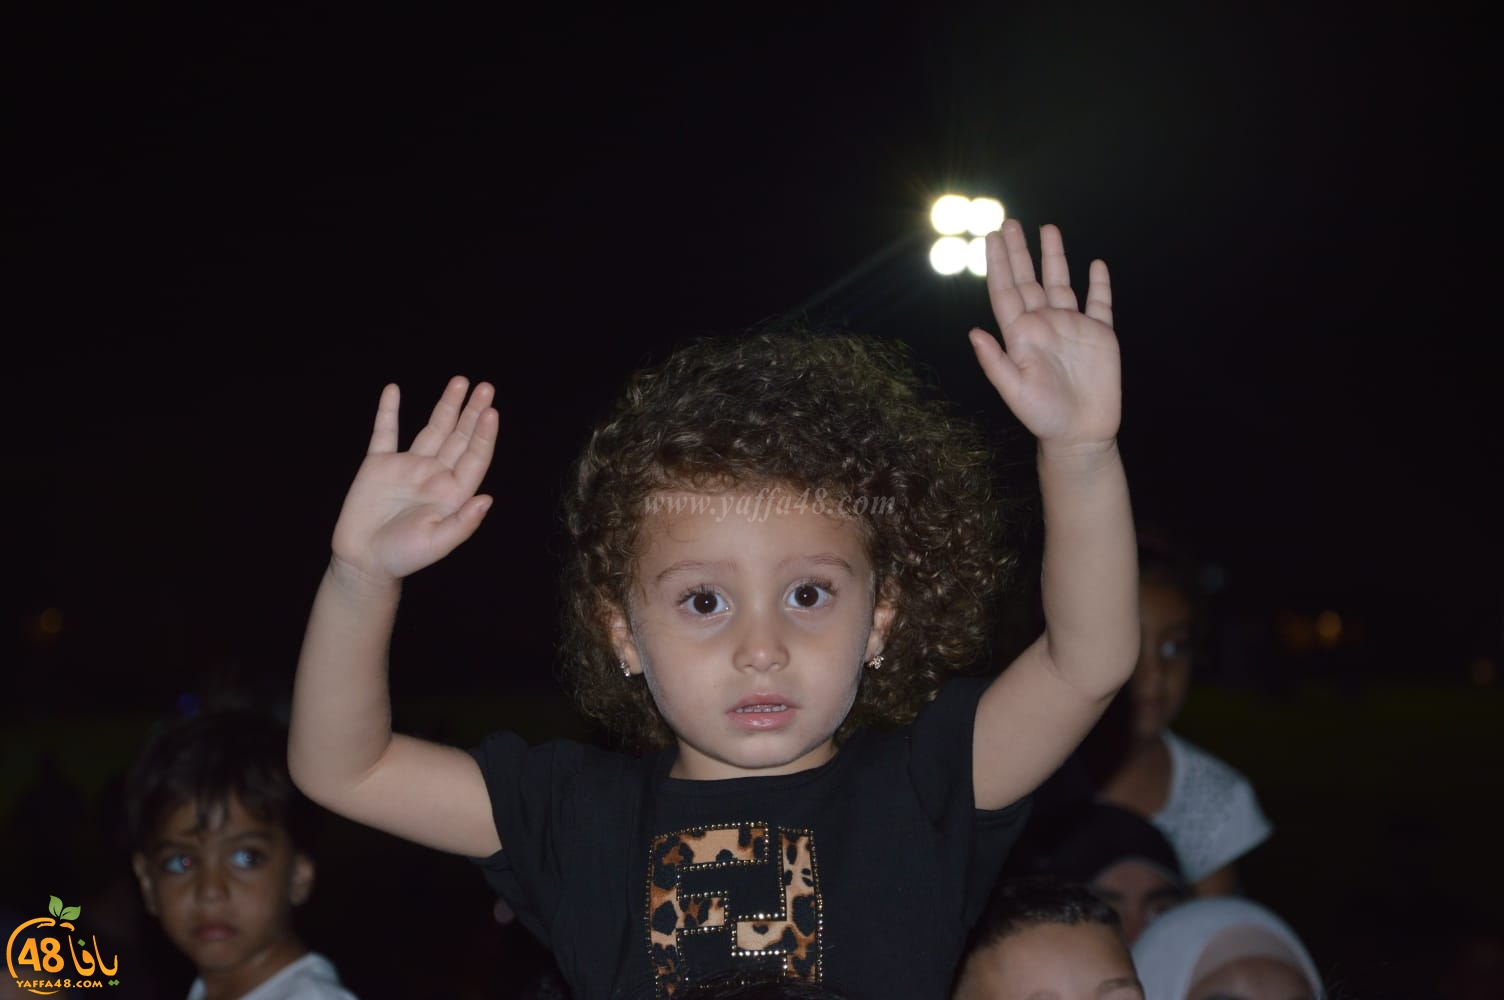   حضور غفير في مهرجان عيد الأضحى بمتنزه يافا 